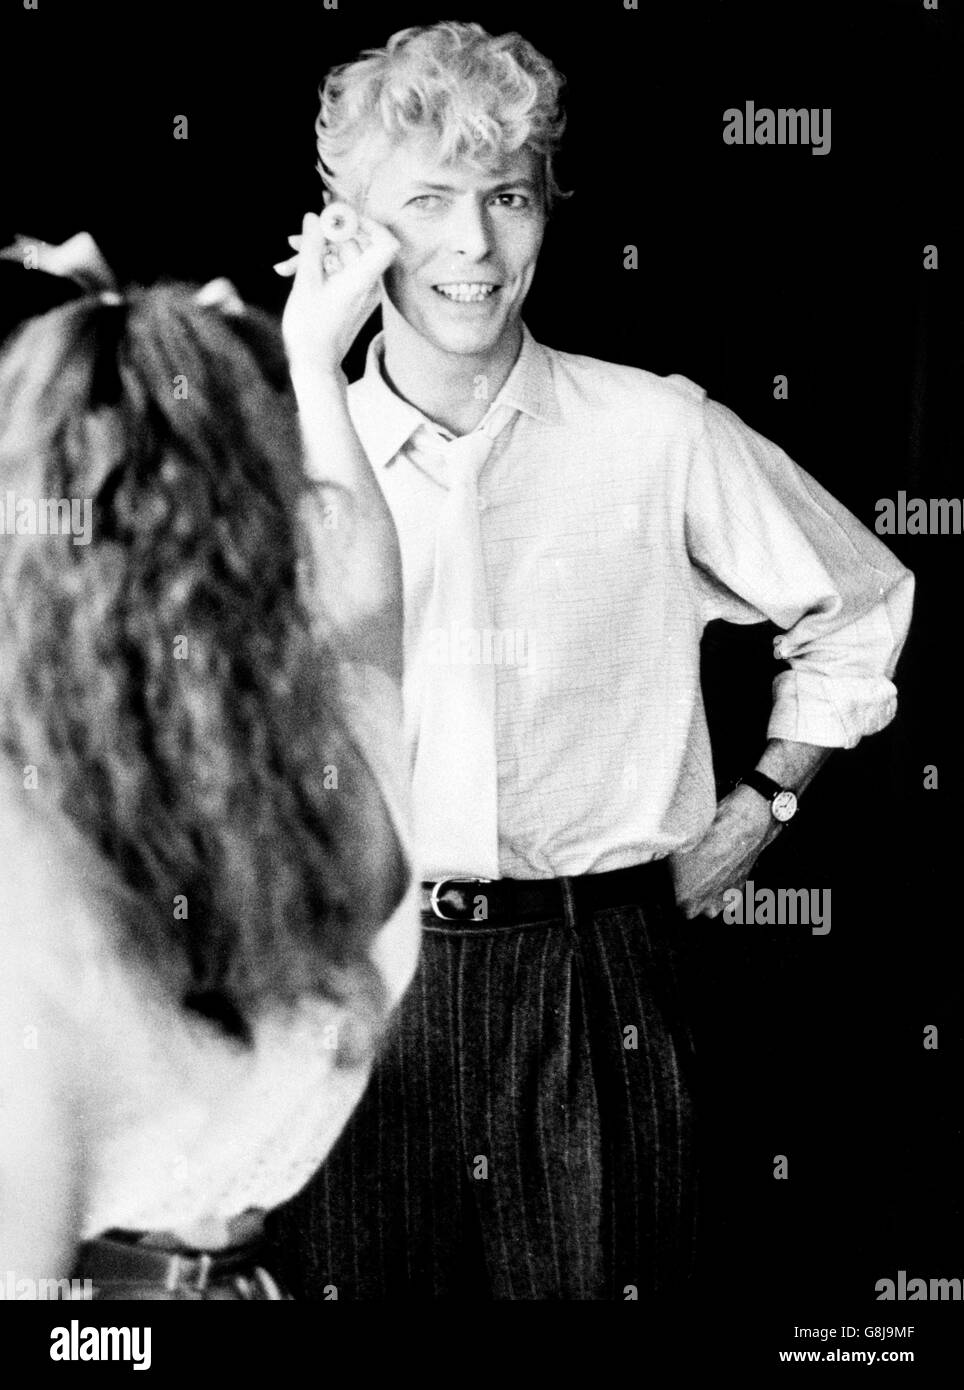 La superestrella del pop David Bowie tiene sus ojos emparejados para el color durante una sesión privada reciente en el museo de Madame Tussauds Waxwork en Londres. La imagen de la estrella se unirá a la colección mundialmente famosa antes de finales de año. Foto de stock